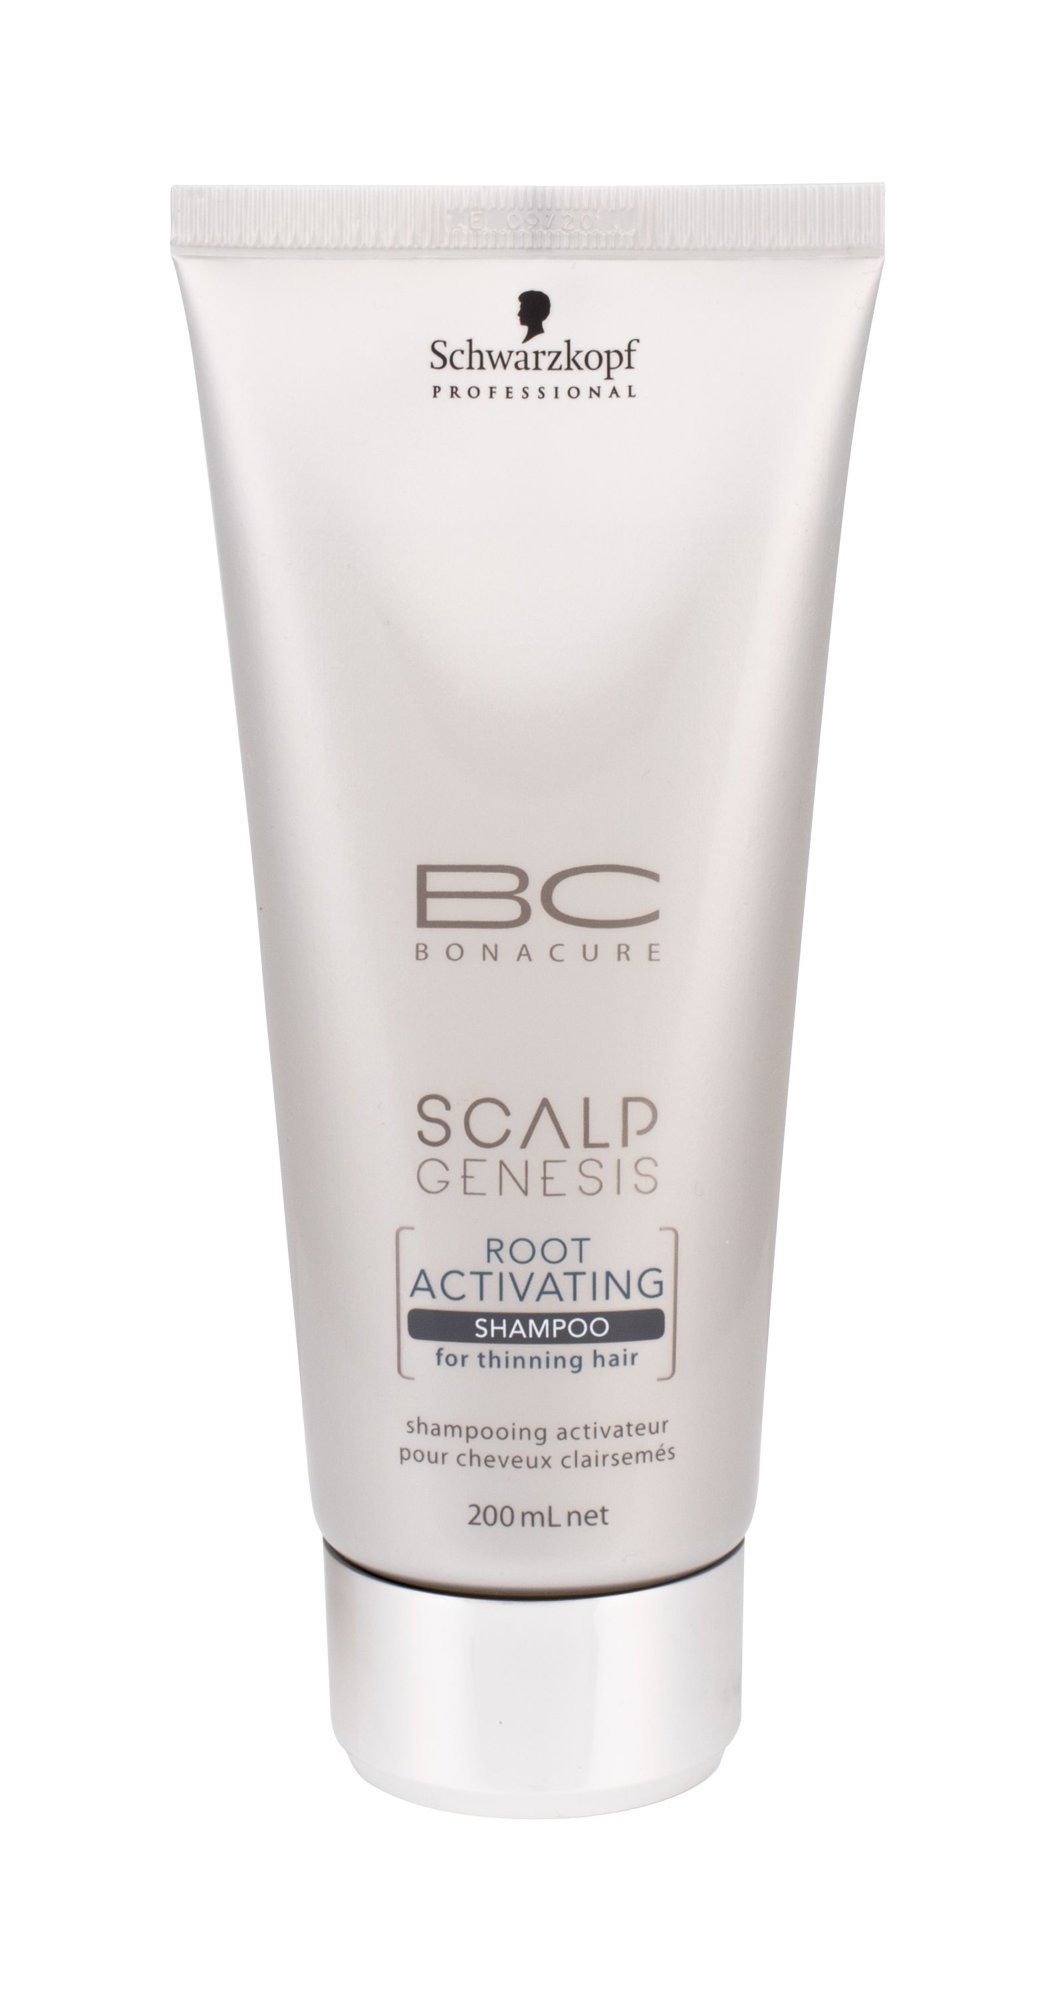 Schwarzkopf BC Bonacure Scalp Genesis Root Activating Shampoo